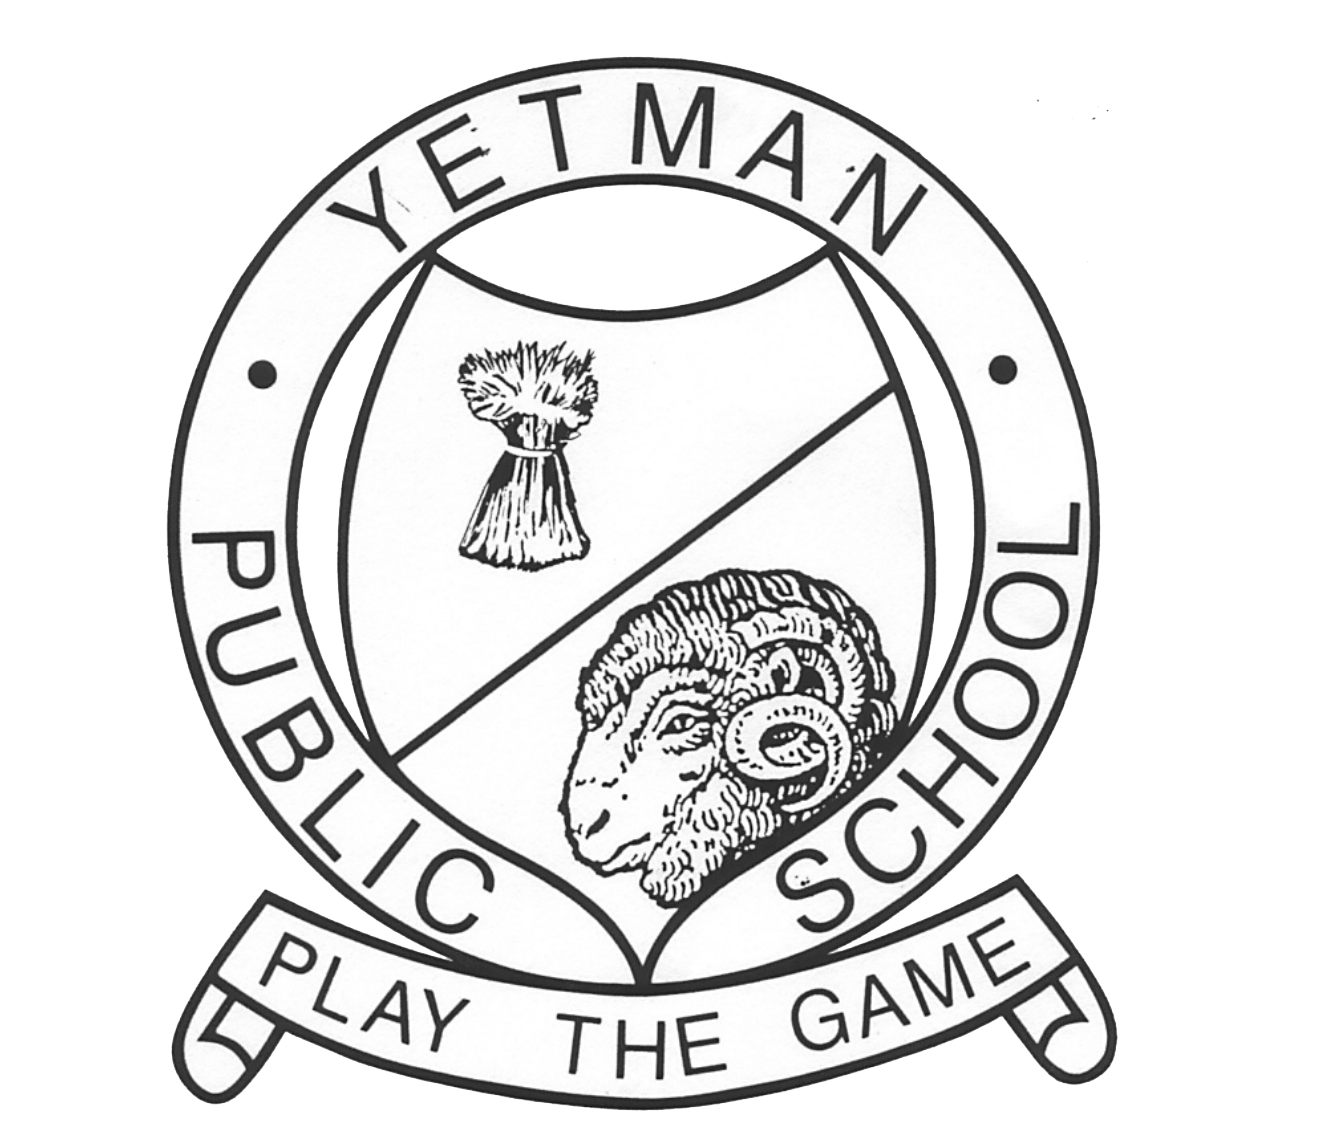 Yetman Public School logo